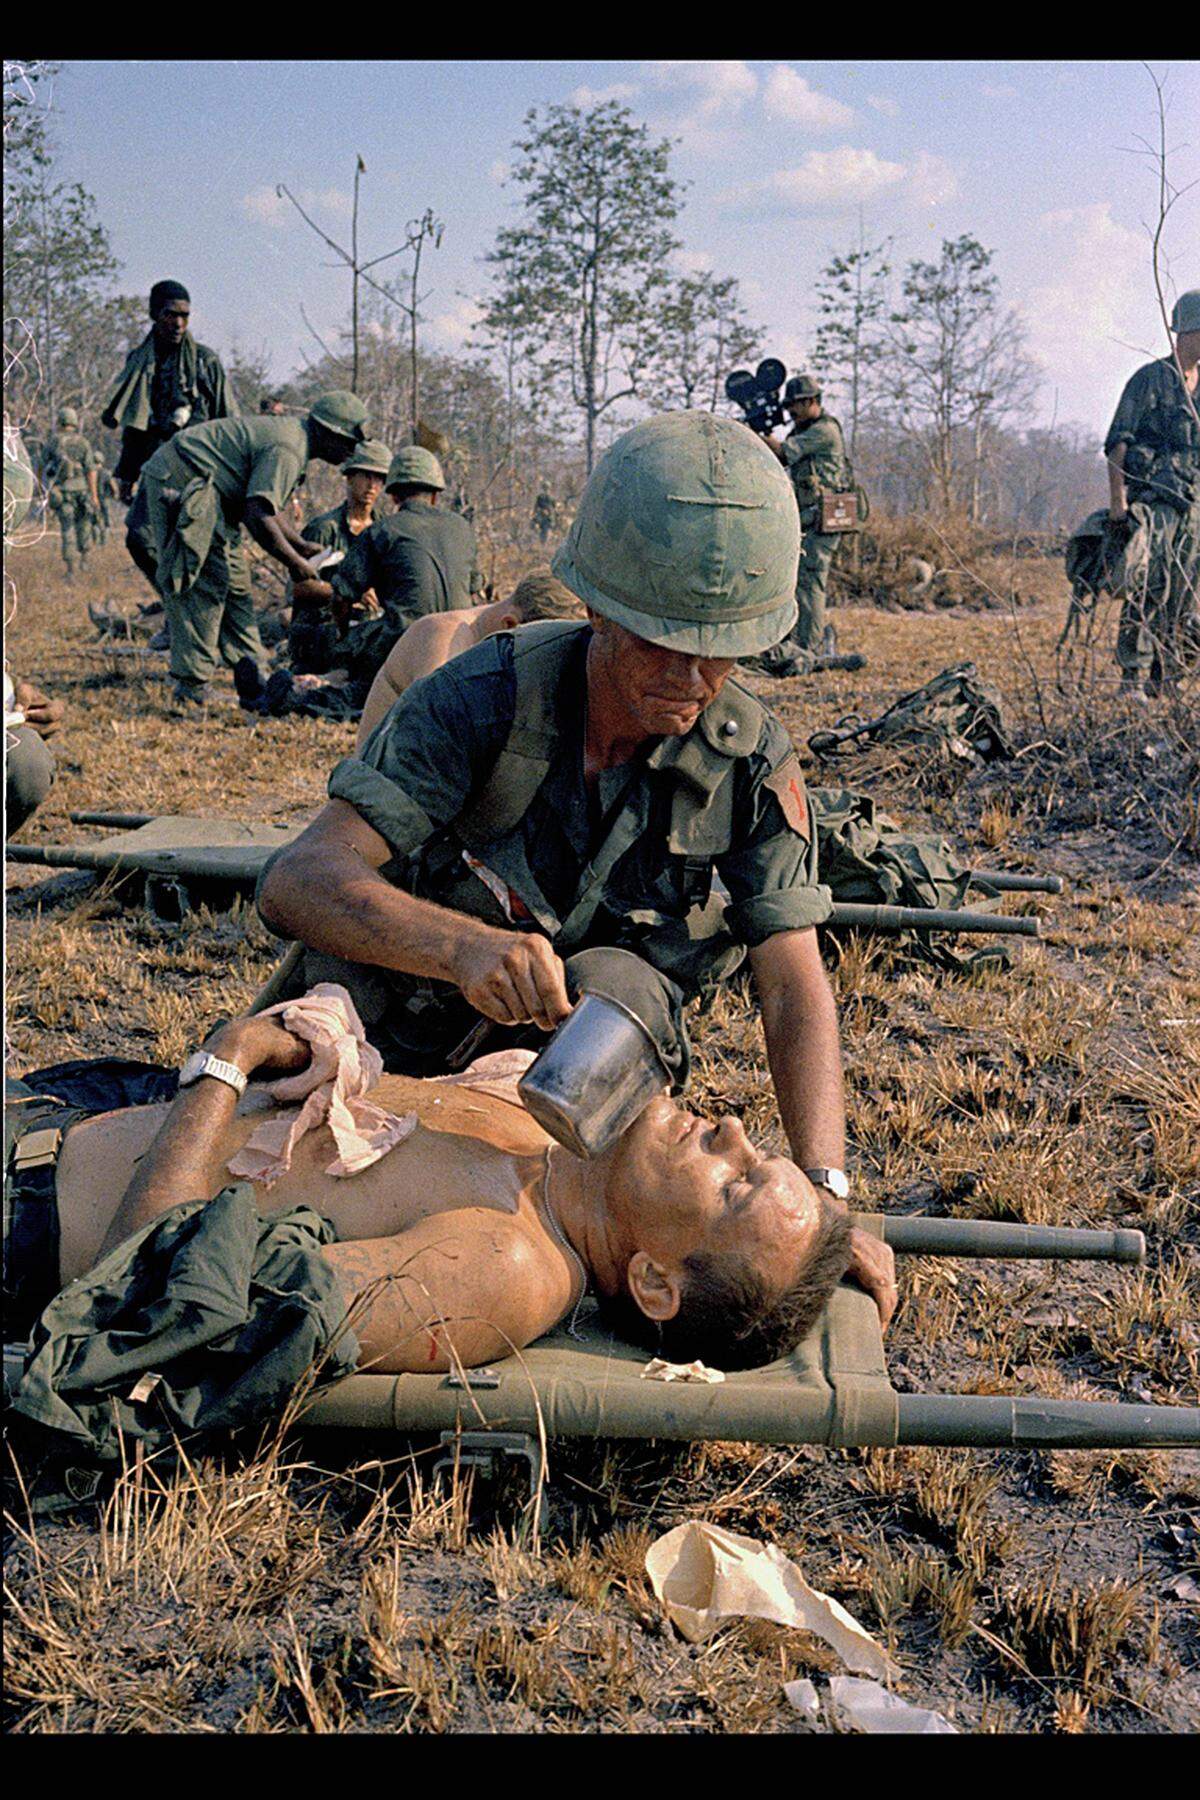 Vietnam, 2. April, 1967: Ein verletzter Soldat wird versorgt.